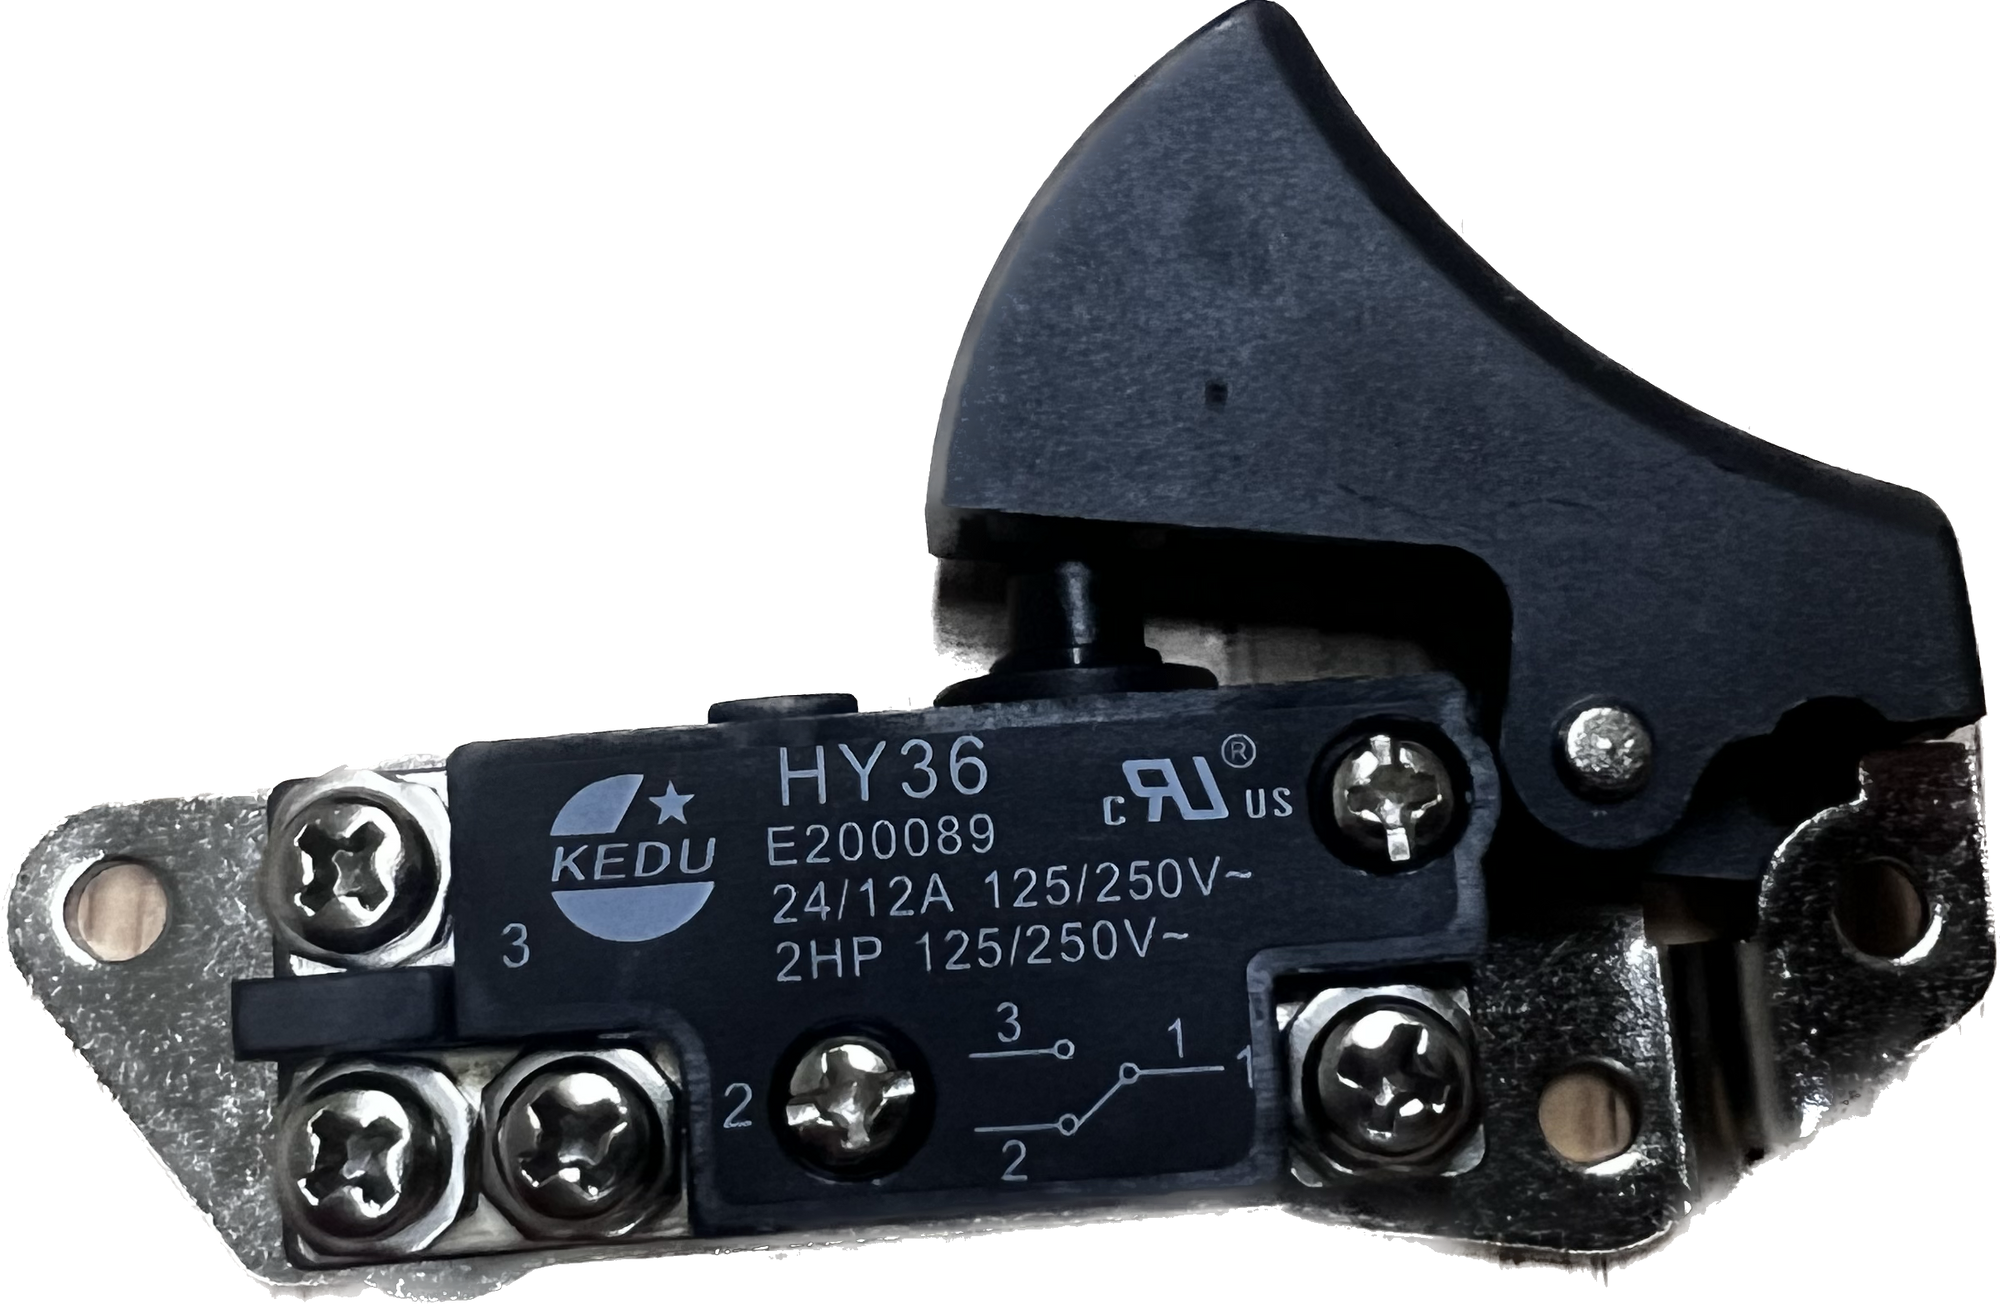 Switch Trigger for 800223 Rebar Bender 1" 25MM